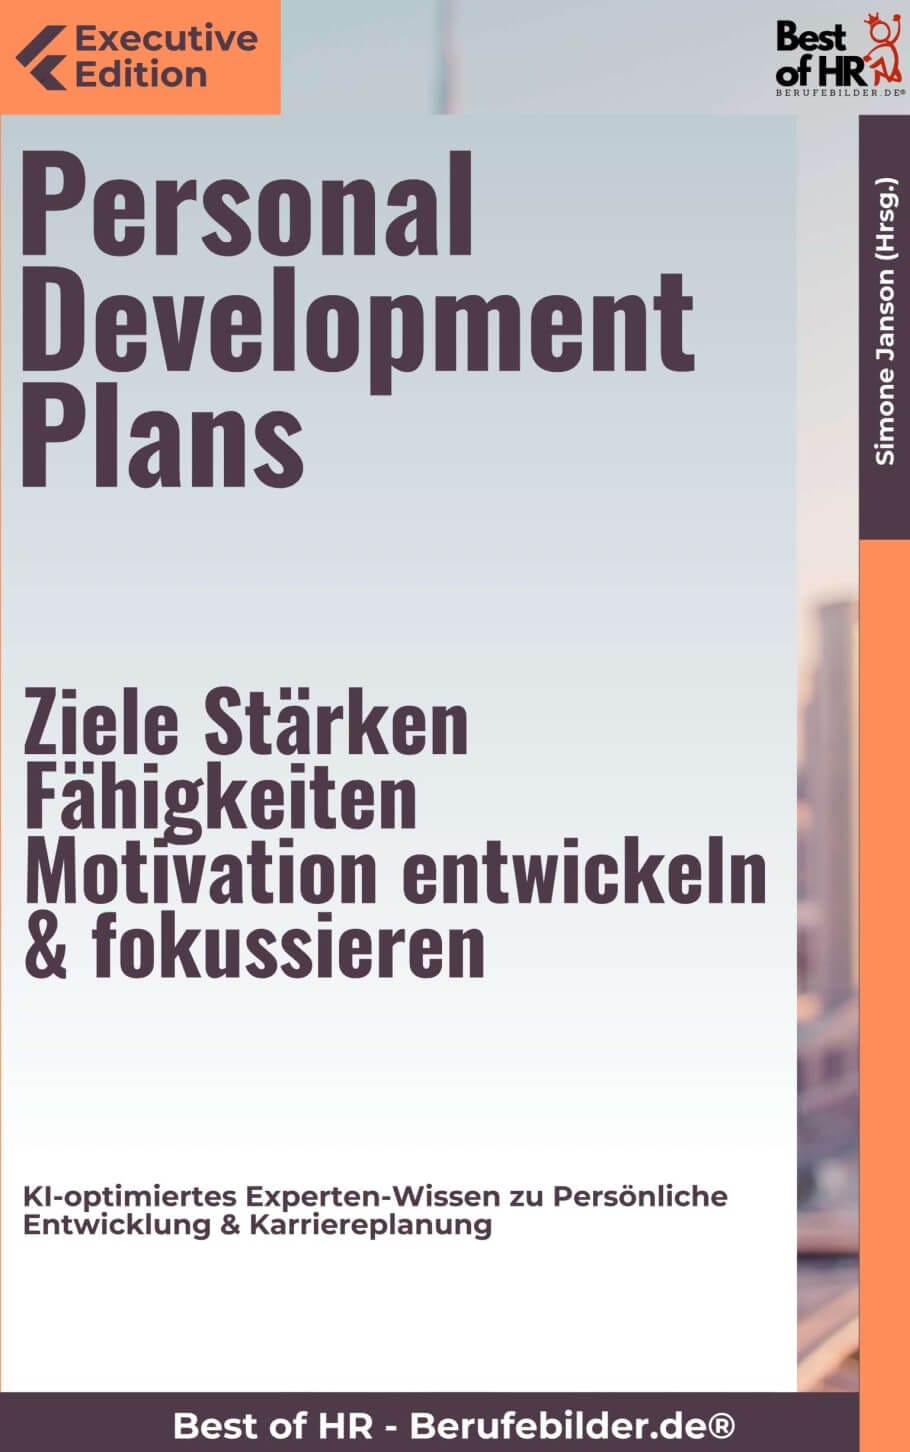 Personal Development Plans – Ziele, Stärken, Fähigkeiten, Motivation entwickeln & fokussieren